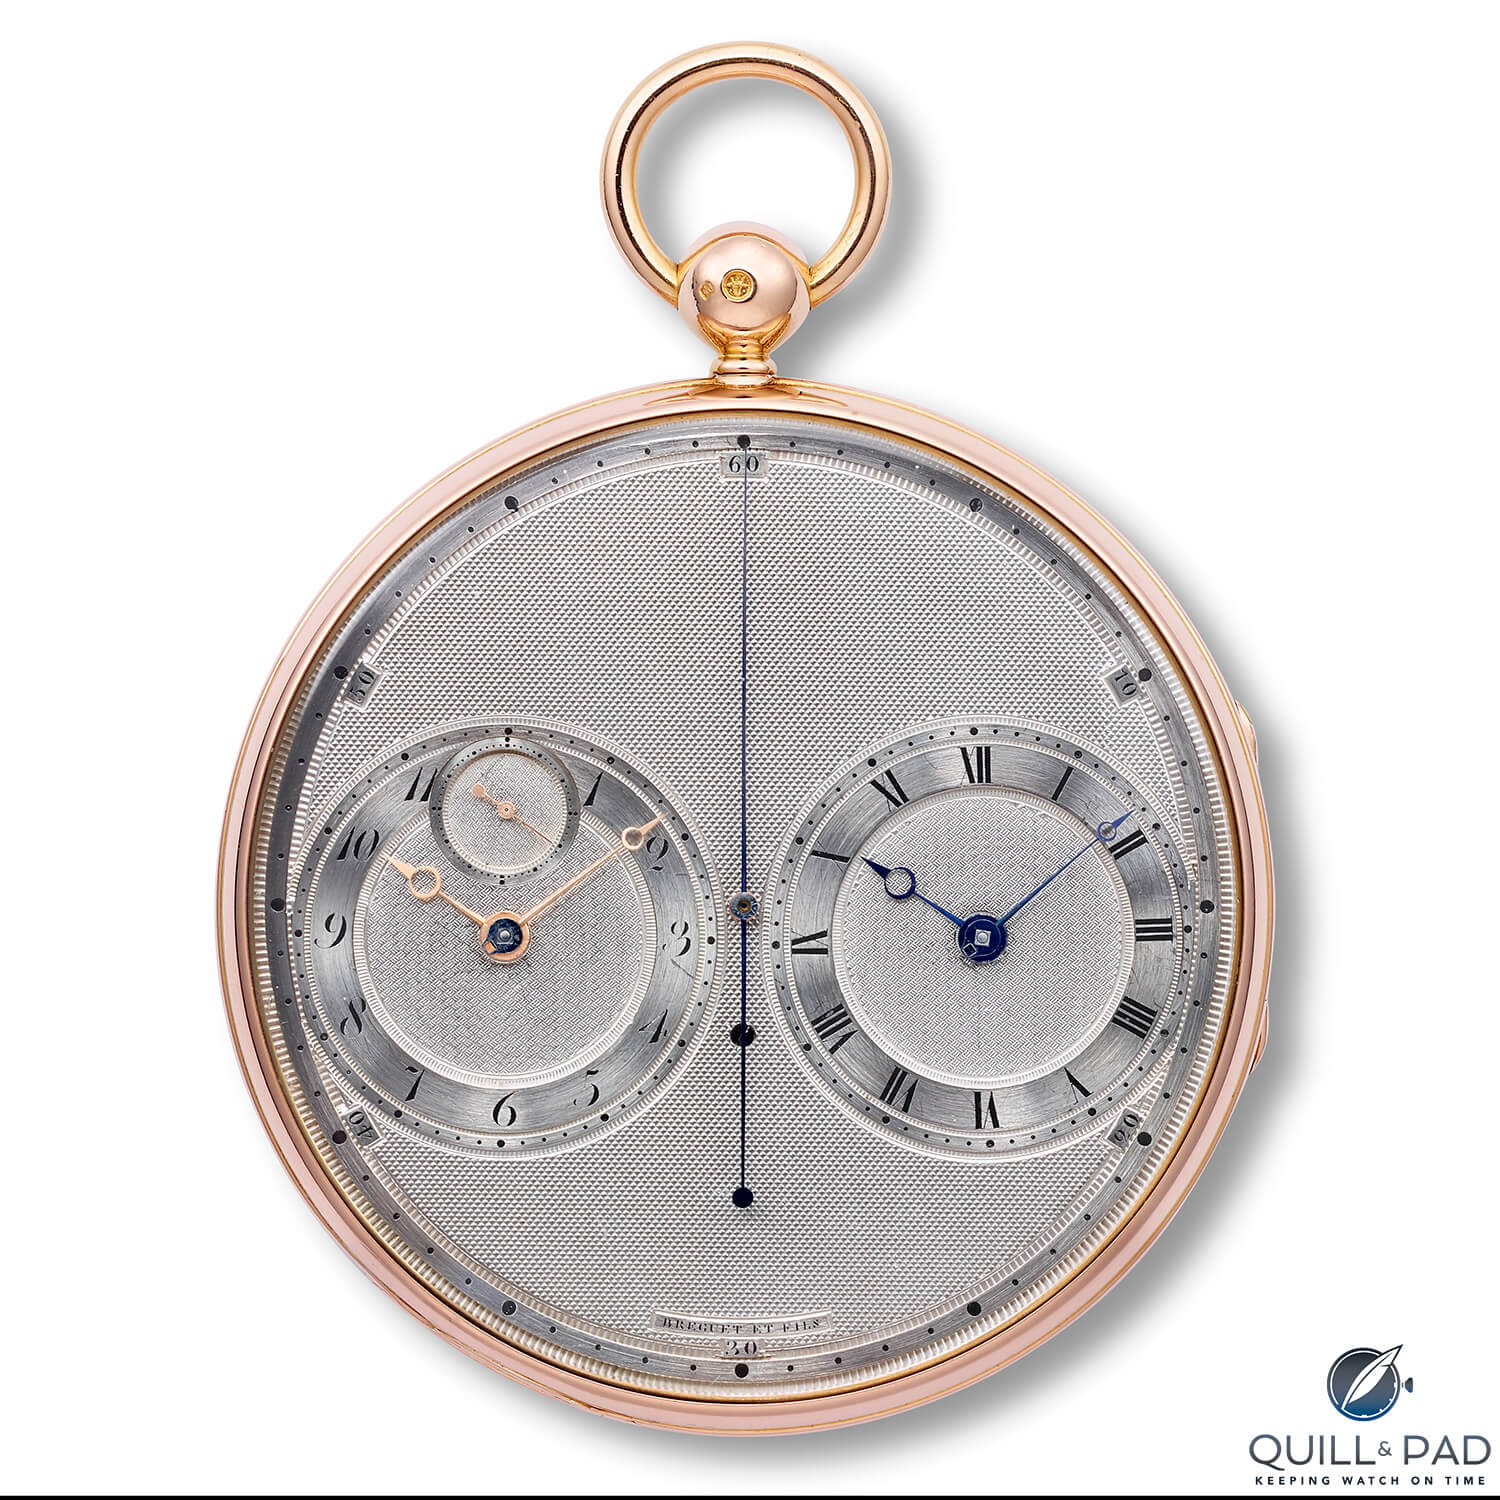 Breguet N° 2667 resonance pocket watch from 1814